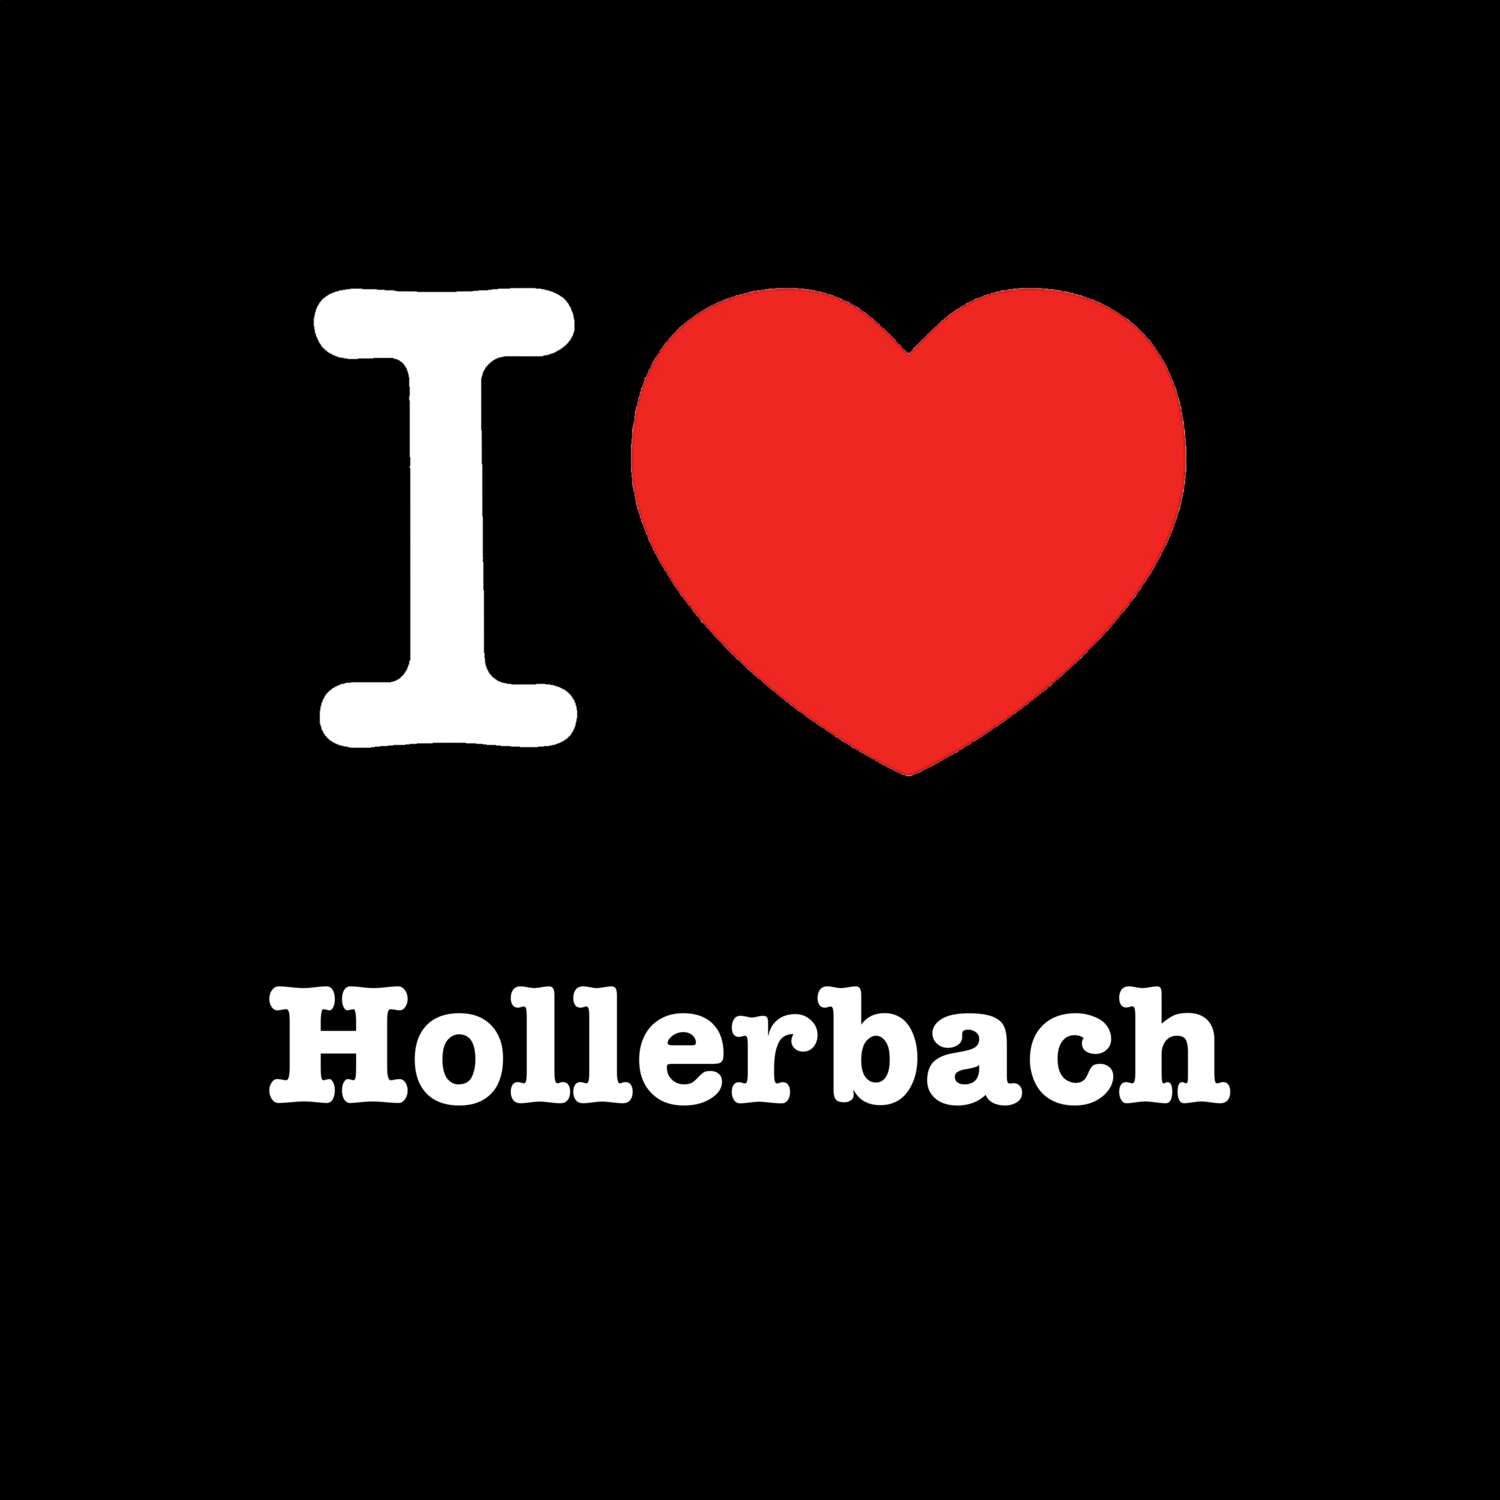 Hollerbach T-Shirt »I love«